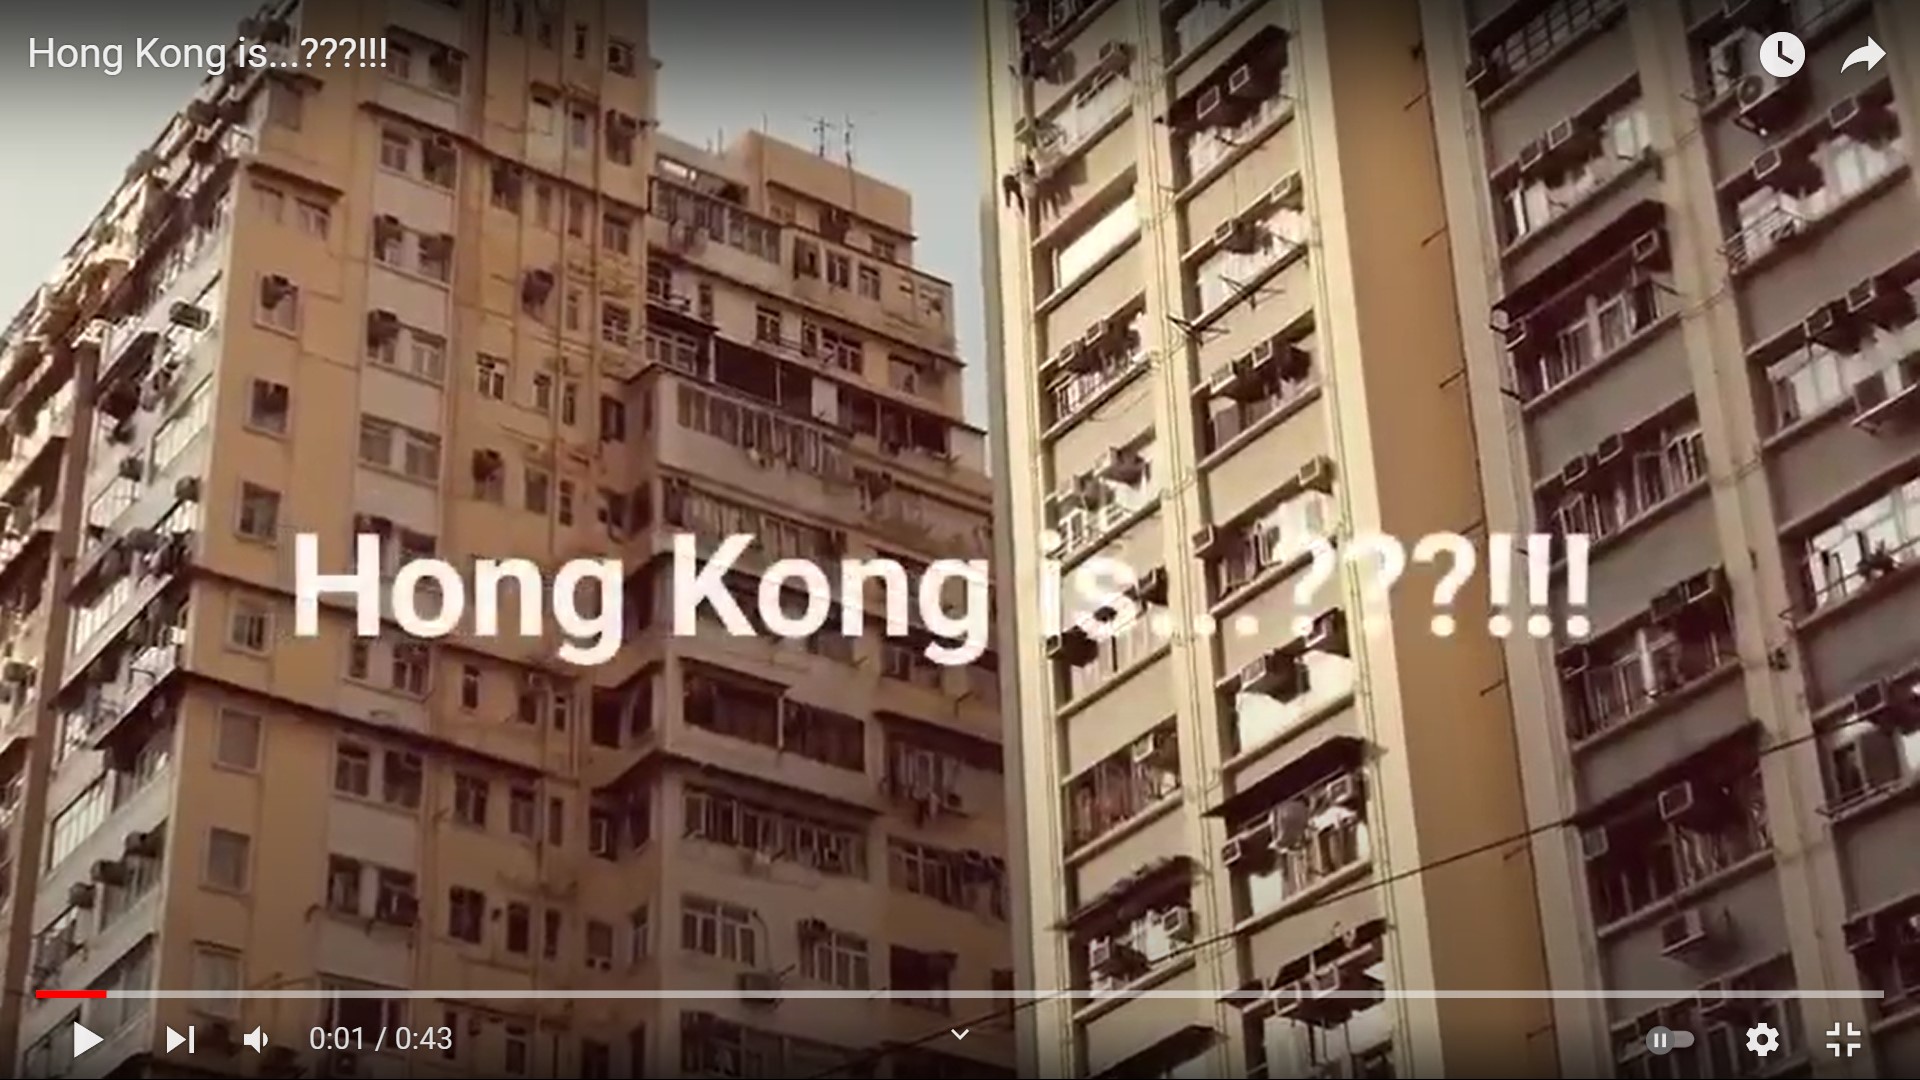 Frank’s “Hong Kong is...???!!!” snapshots video